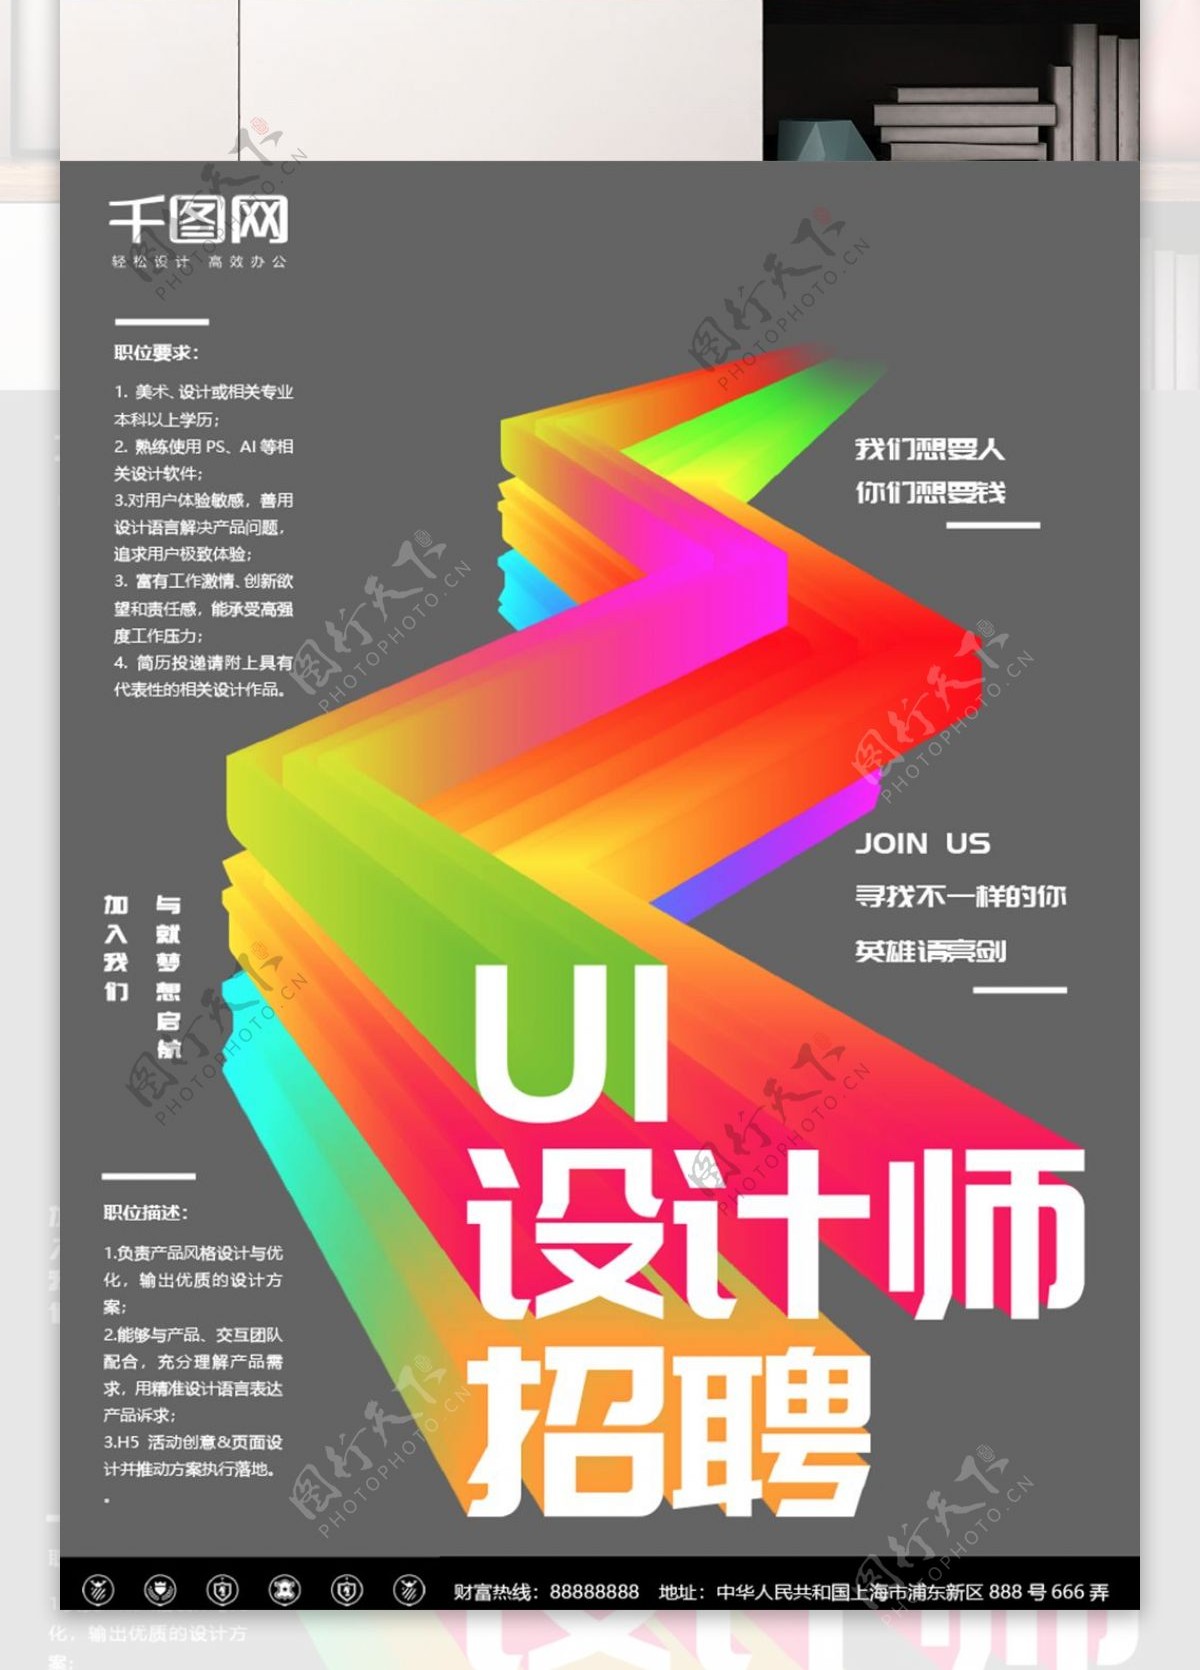 简约炫彩UI设计师招聘海报设计Word海报